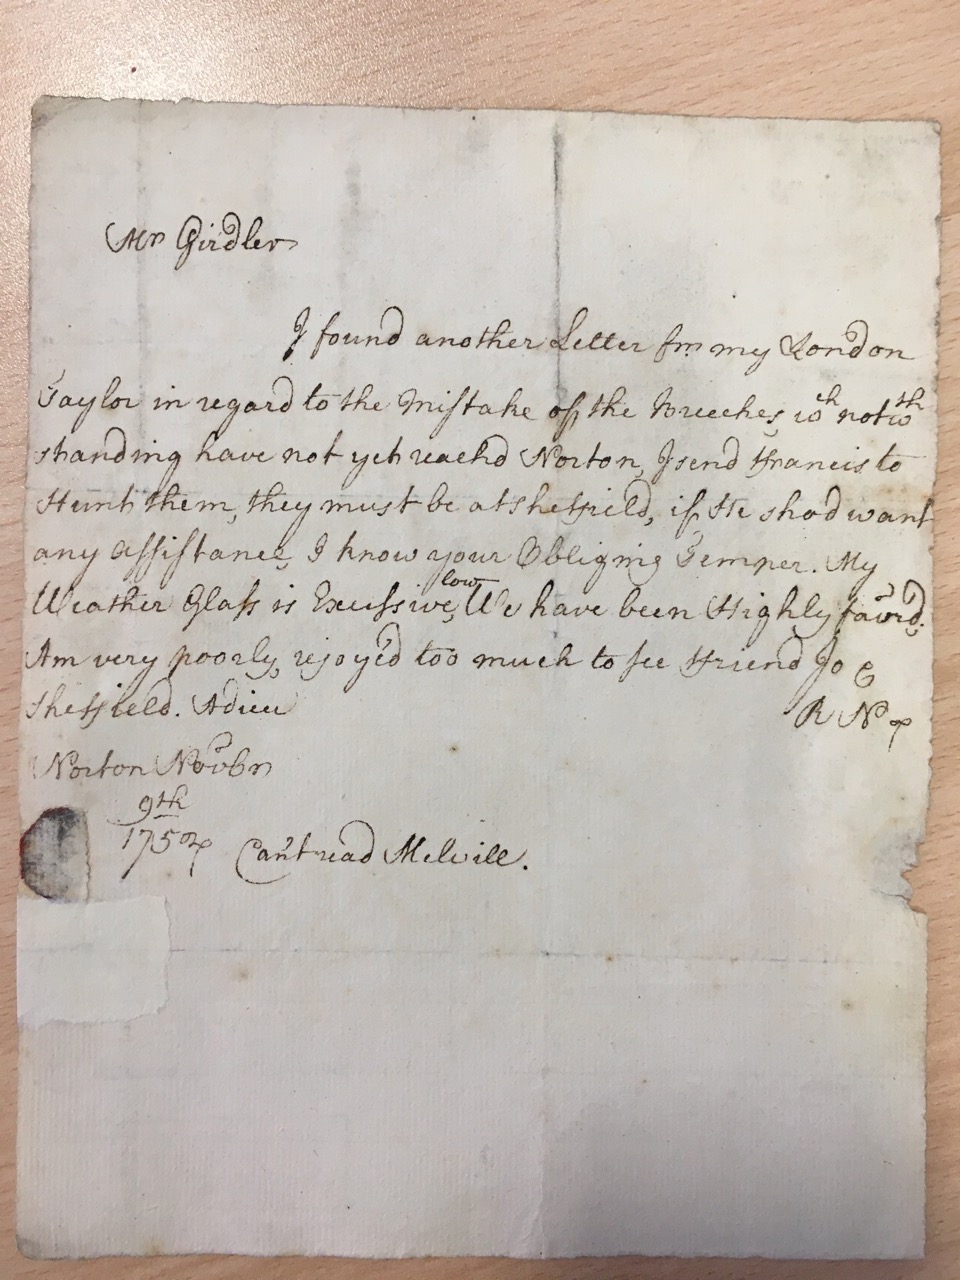 Image #1 of letter: Robert Newton to John Girdler, 9 November 1754